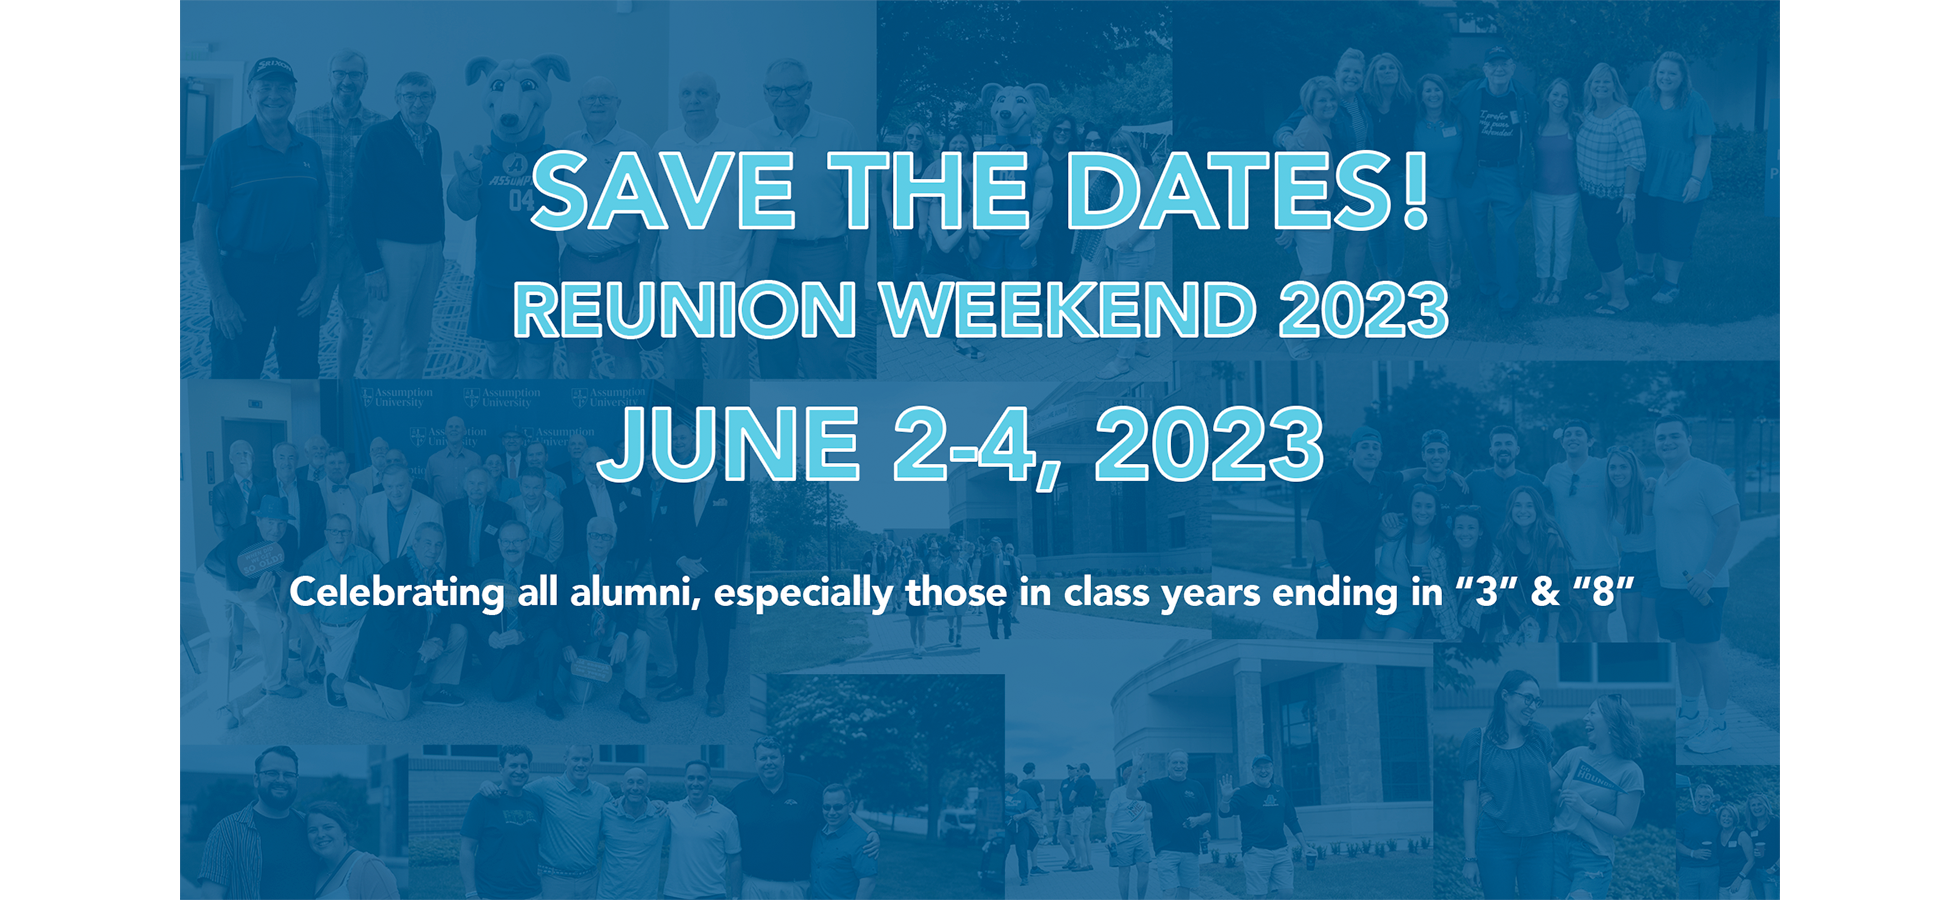 Reunion Weekend 2023 Assumption University